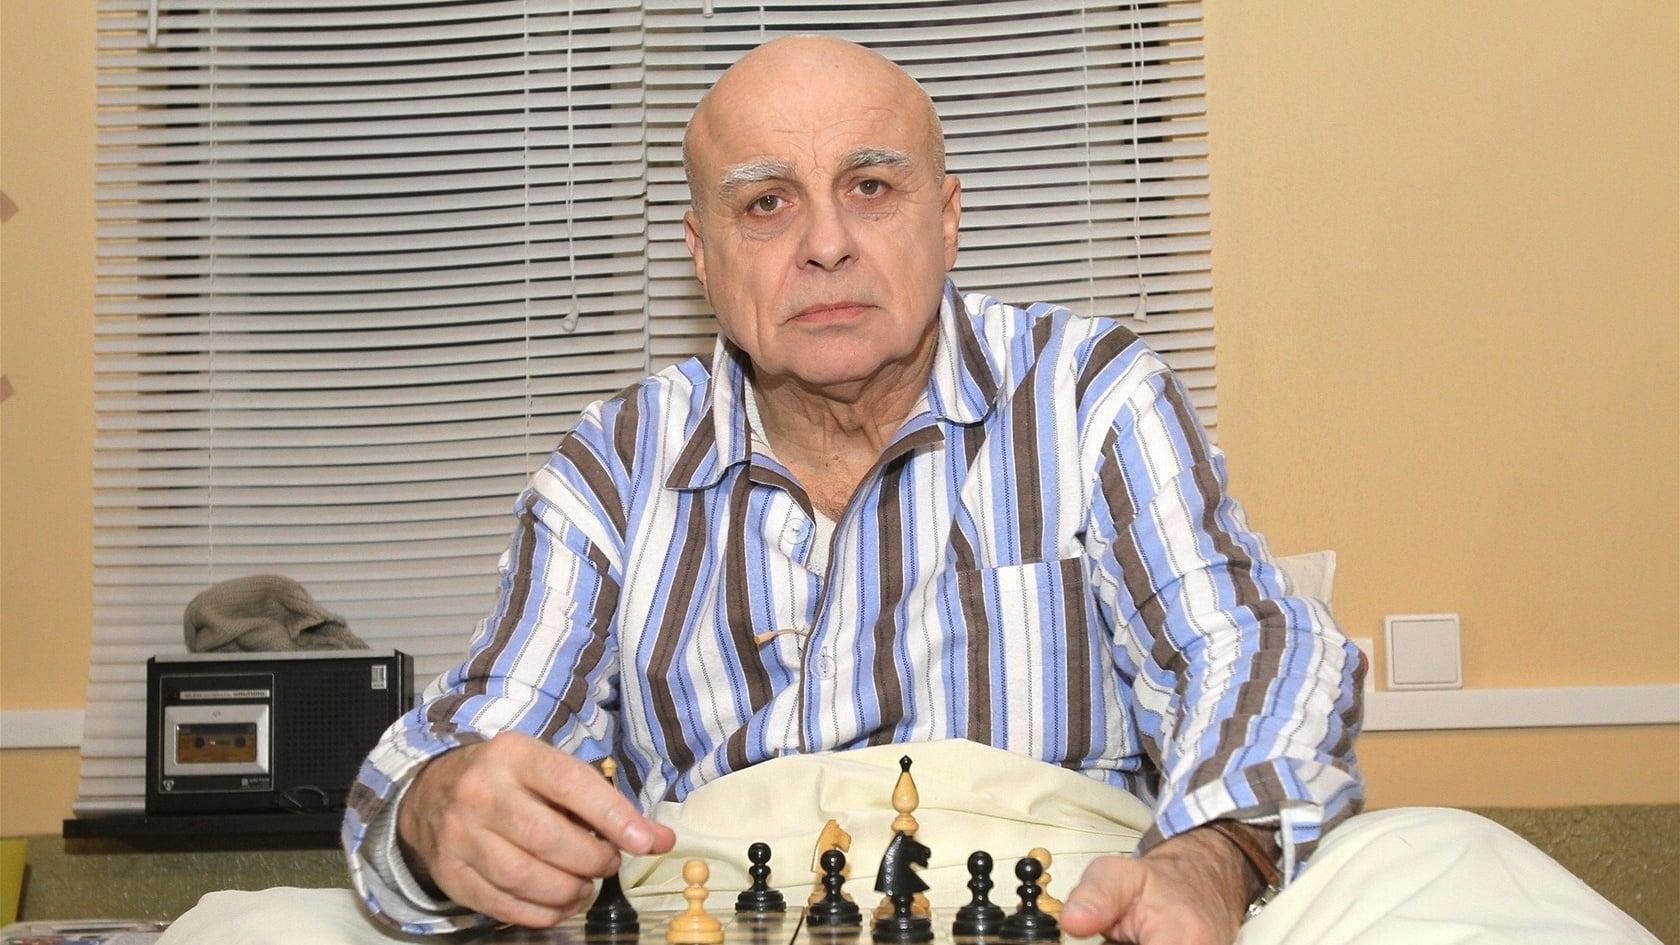 Jaroslav Čejka backdrop